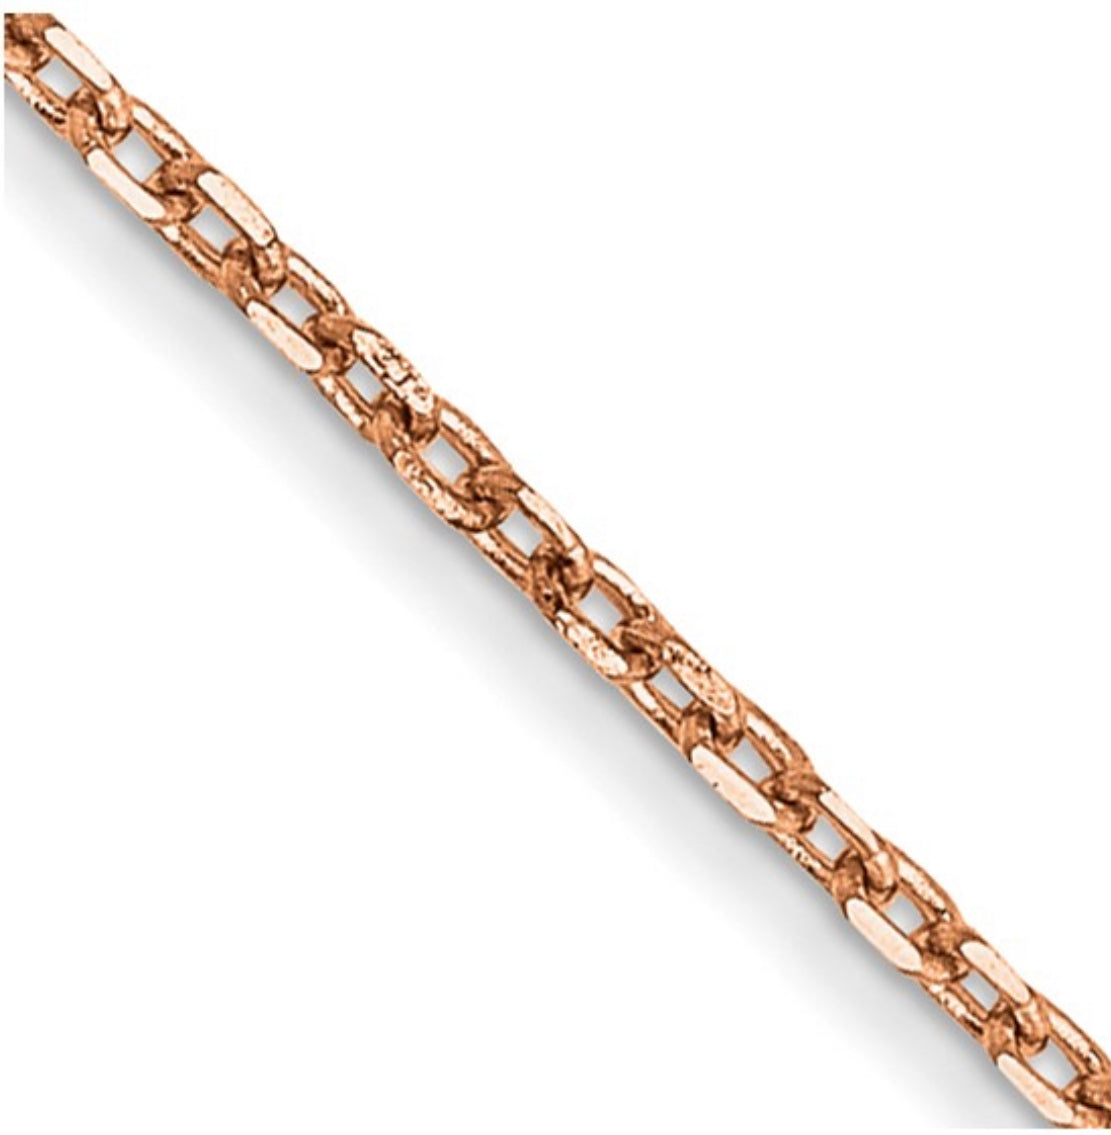 Cadena tipo cable de oro rosa de 14 quilates con cierre de mosquetón - 1,00 mm - varias longitudes